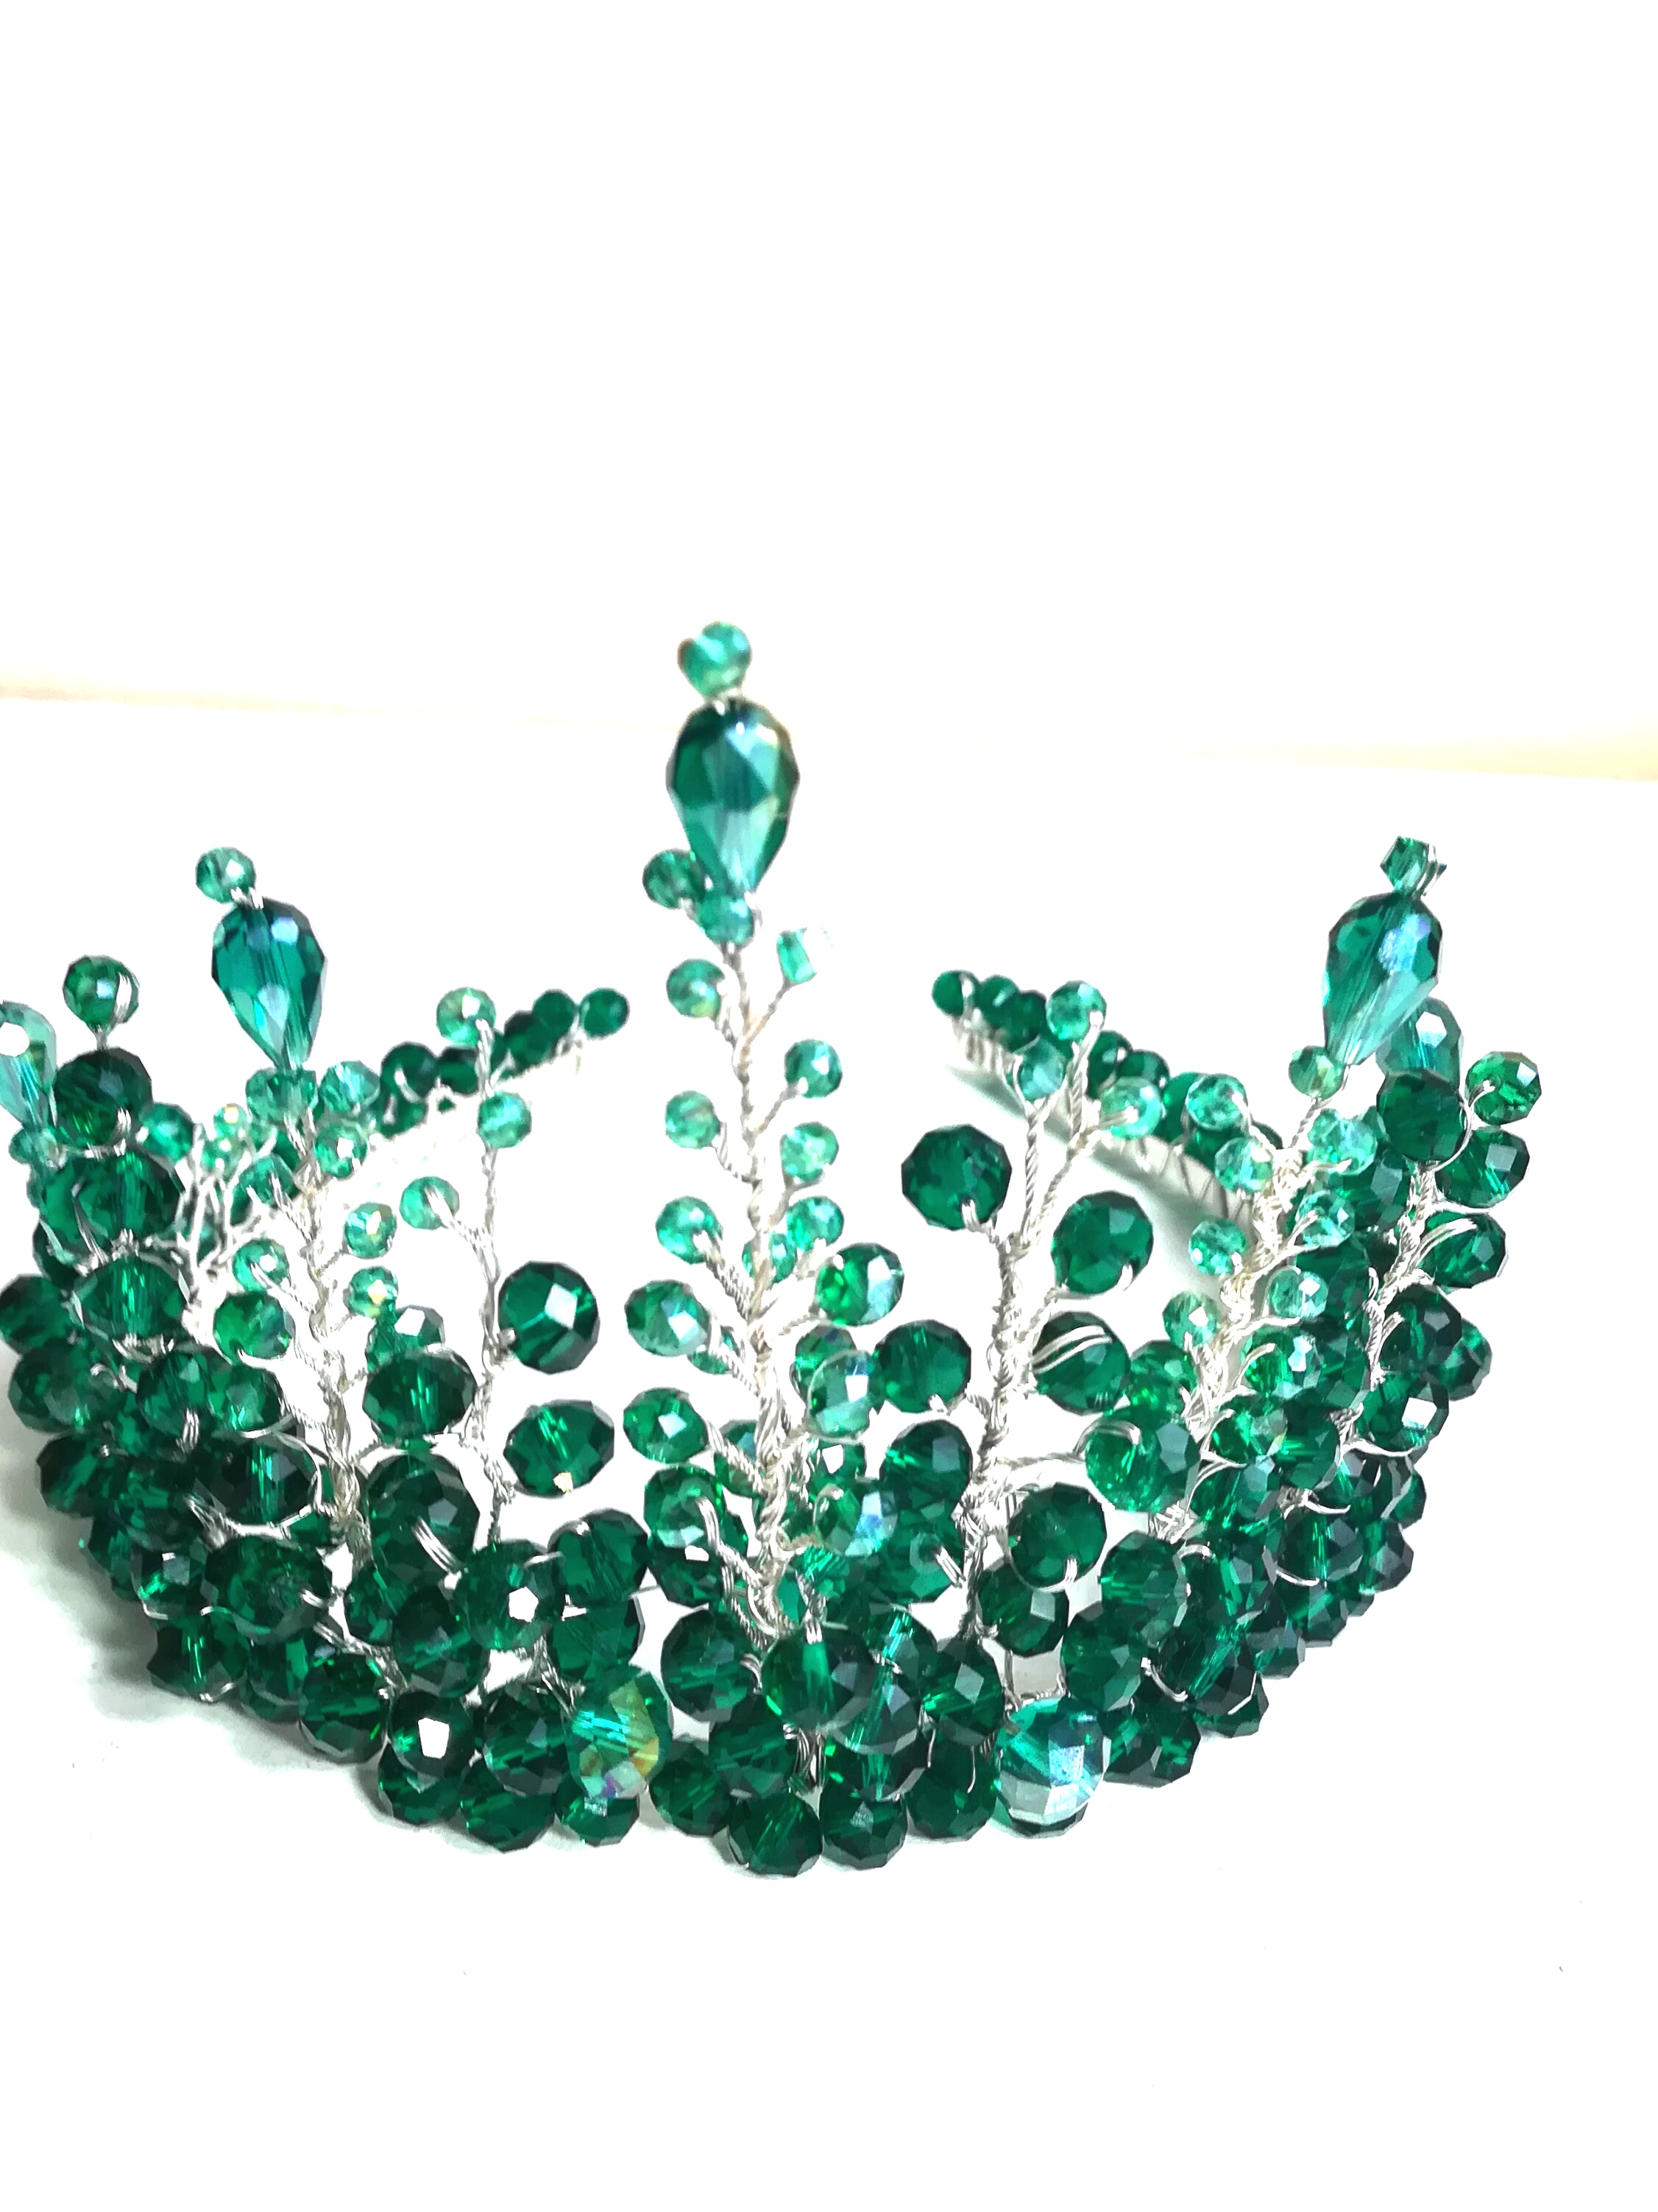 Потрясающая изумрудно-зеленая свадебная корона с кристаллами - богиня Артемида